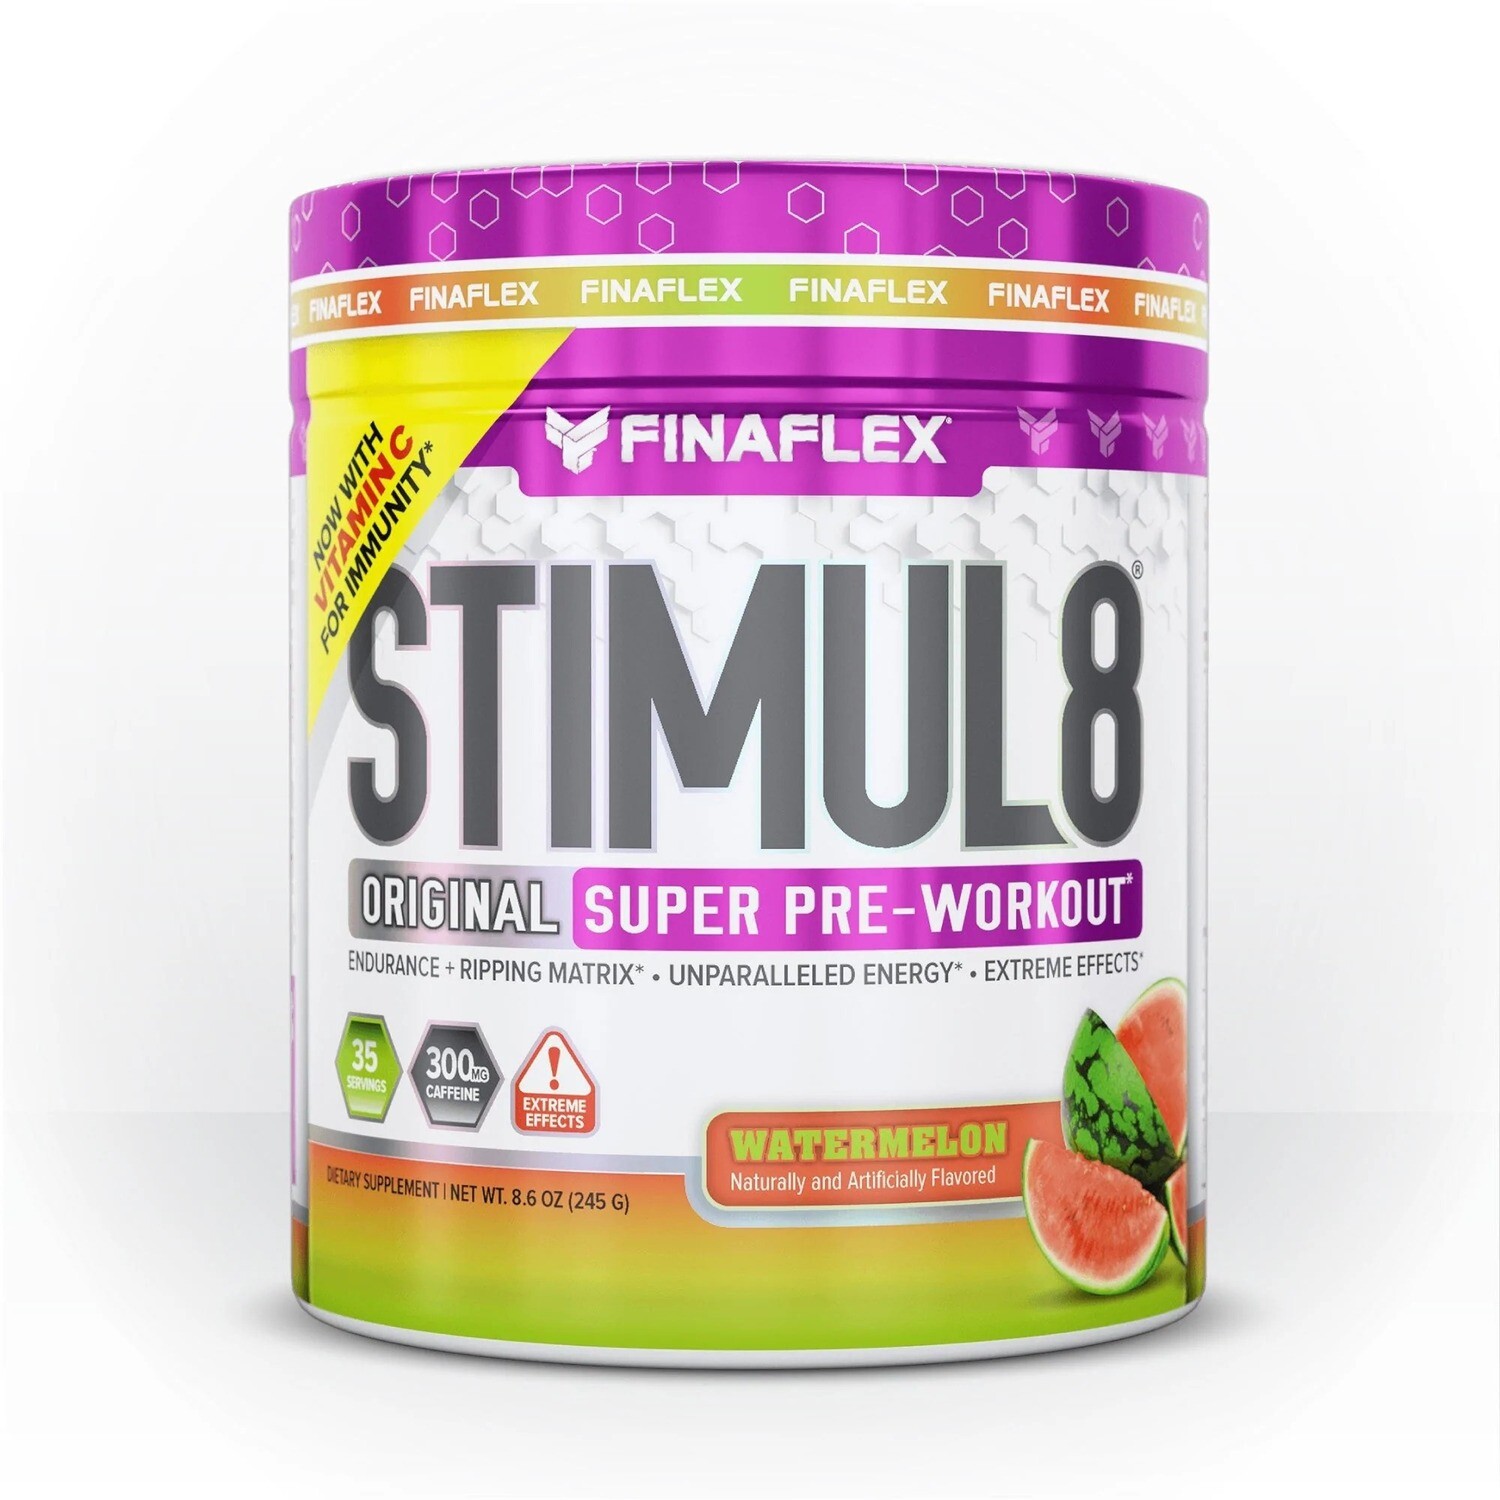 Finaflex STIMUL8 Original Super Pre-Workout